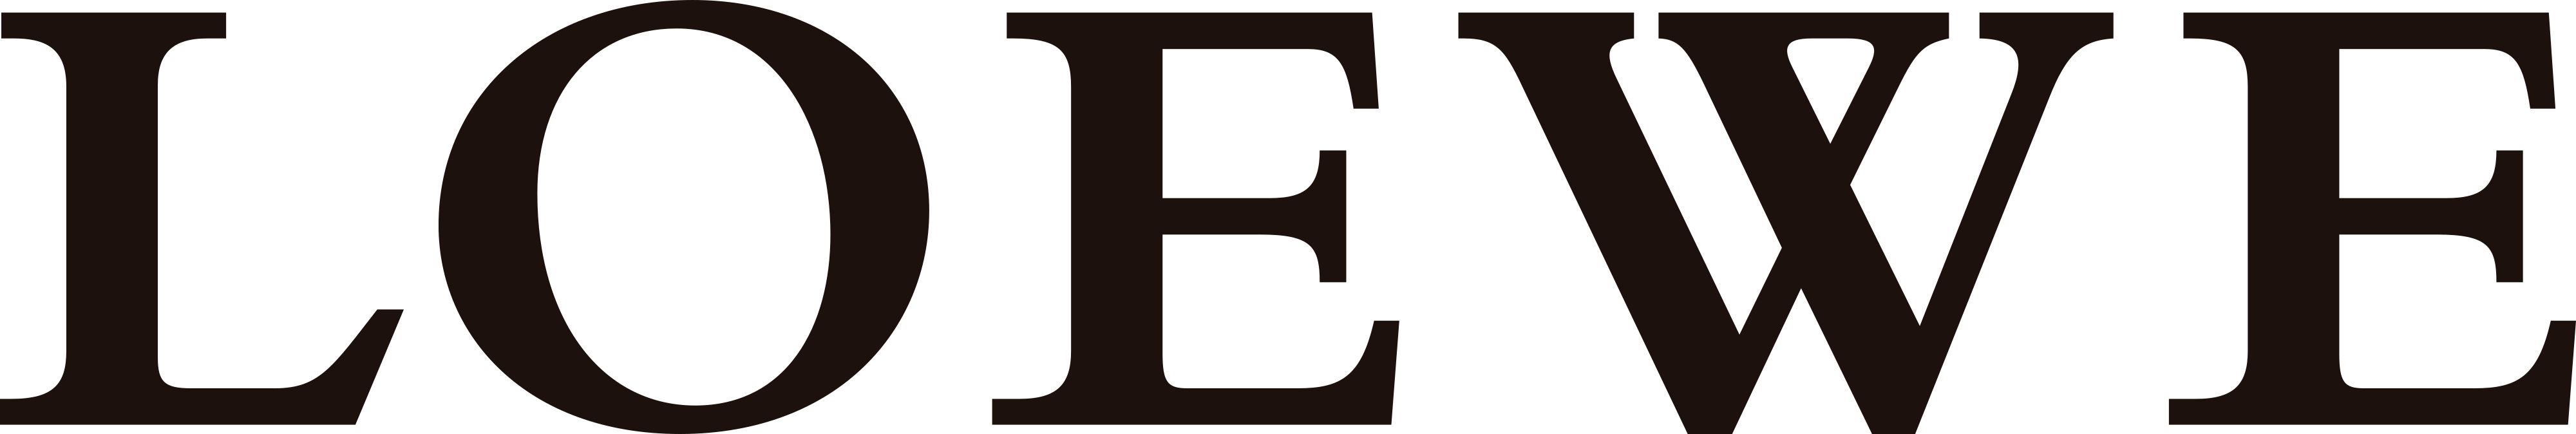 Loewe logo - download.